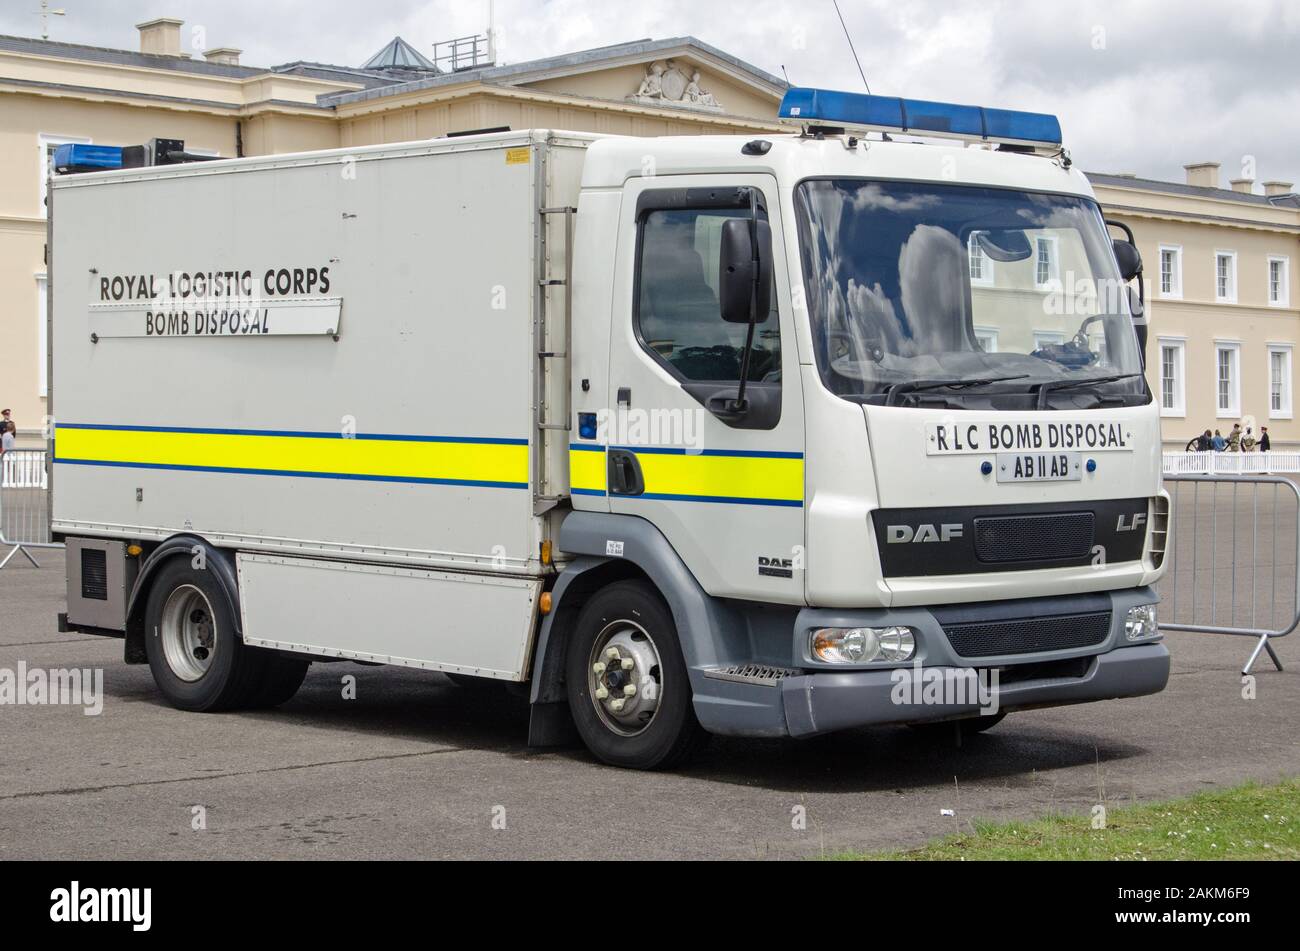 Sandhurst, Berkshire, Reino Unido - 16 de junio, 2019: camión perteneciente al equipo de eliminación de bombas del Cuerpo Real de Logística estacionada en pantalla Militar en Sandhurst Foto de stock